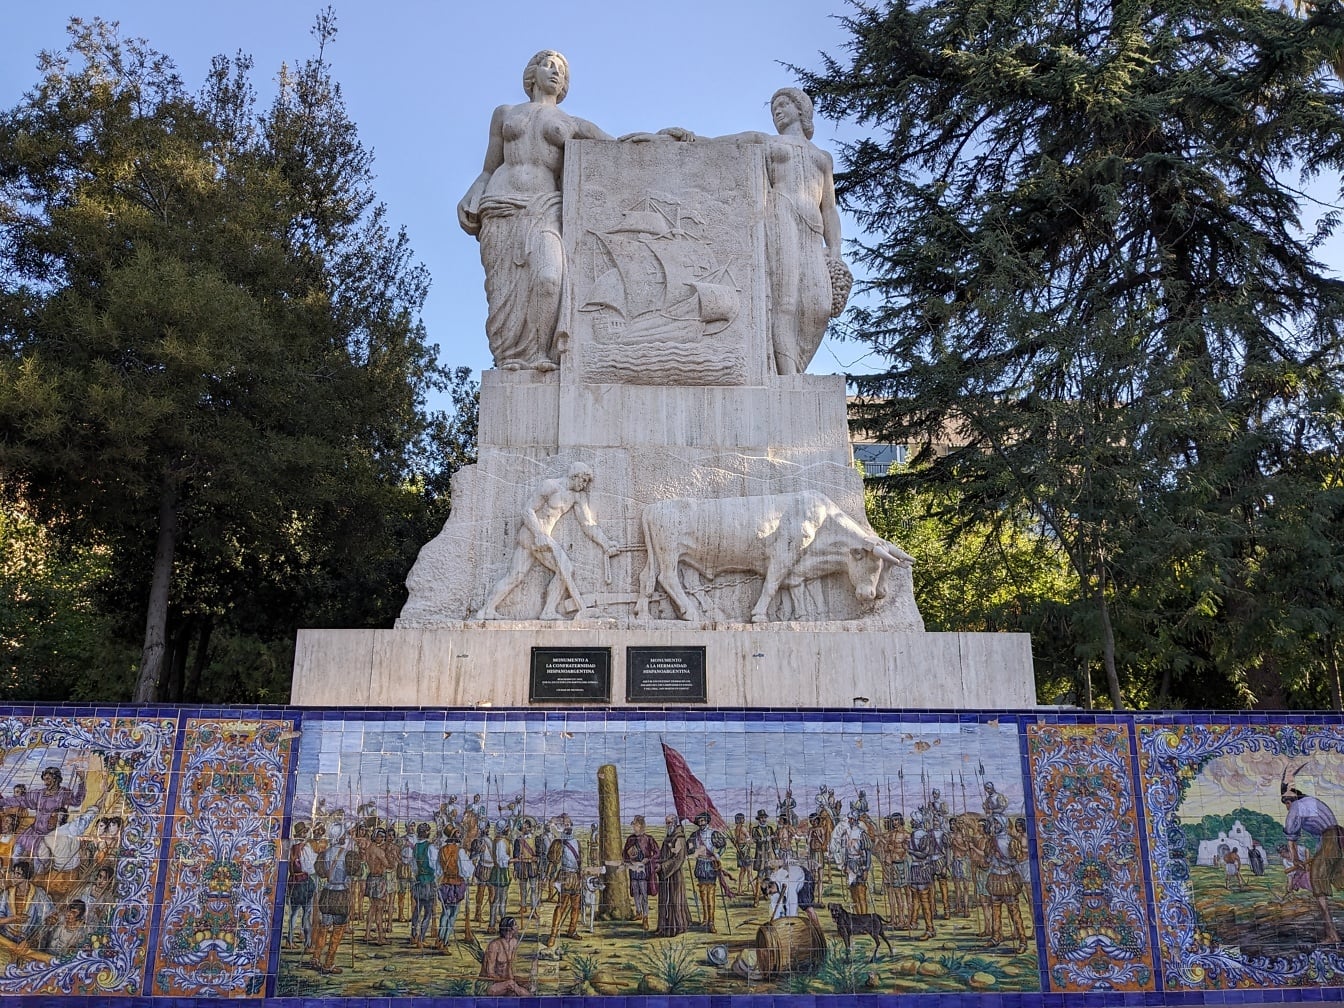 Pamätník španielskeho bratstva od sochára Luisa Bartolomého Somozu na španielskom námestí v meste Mendoza v Argentíne